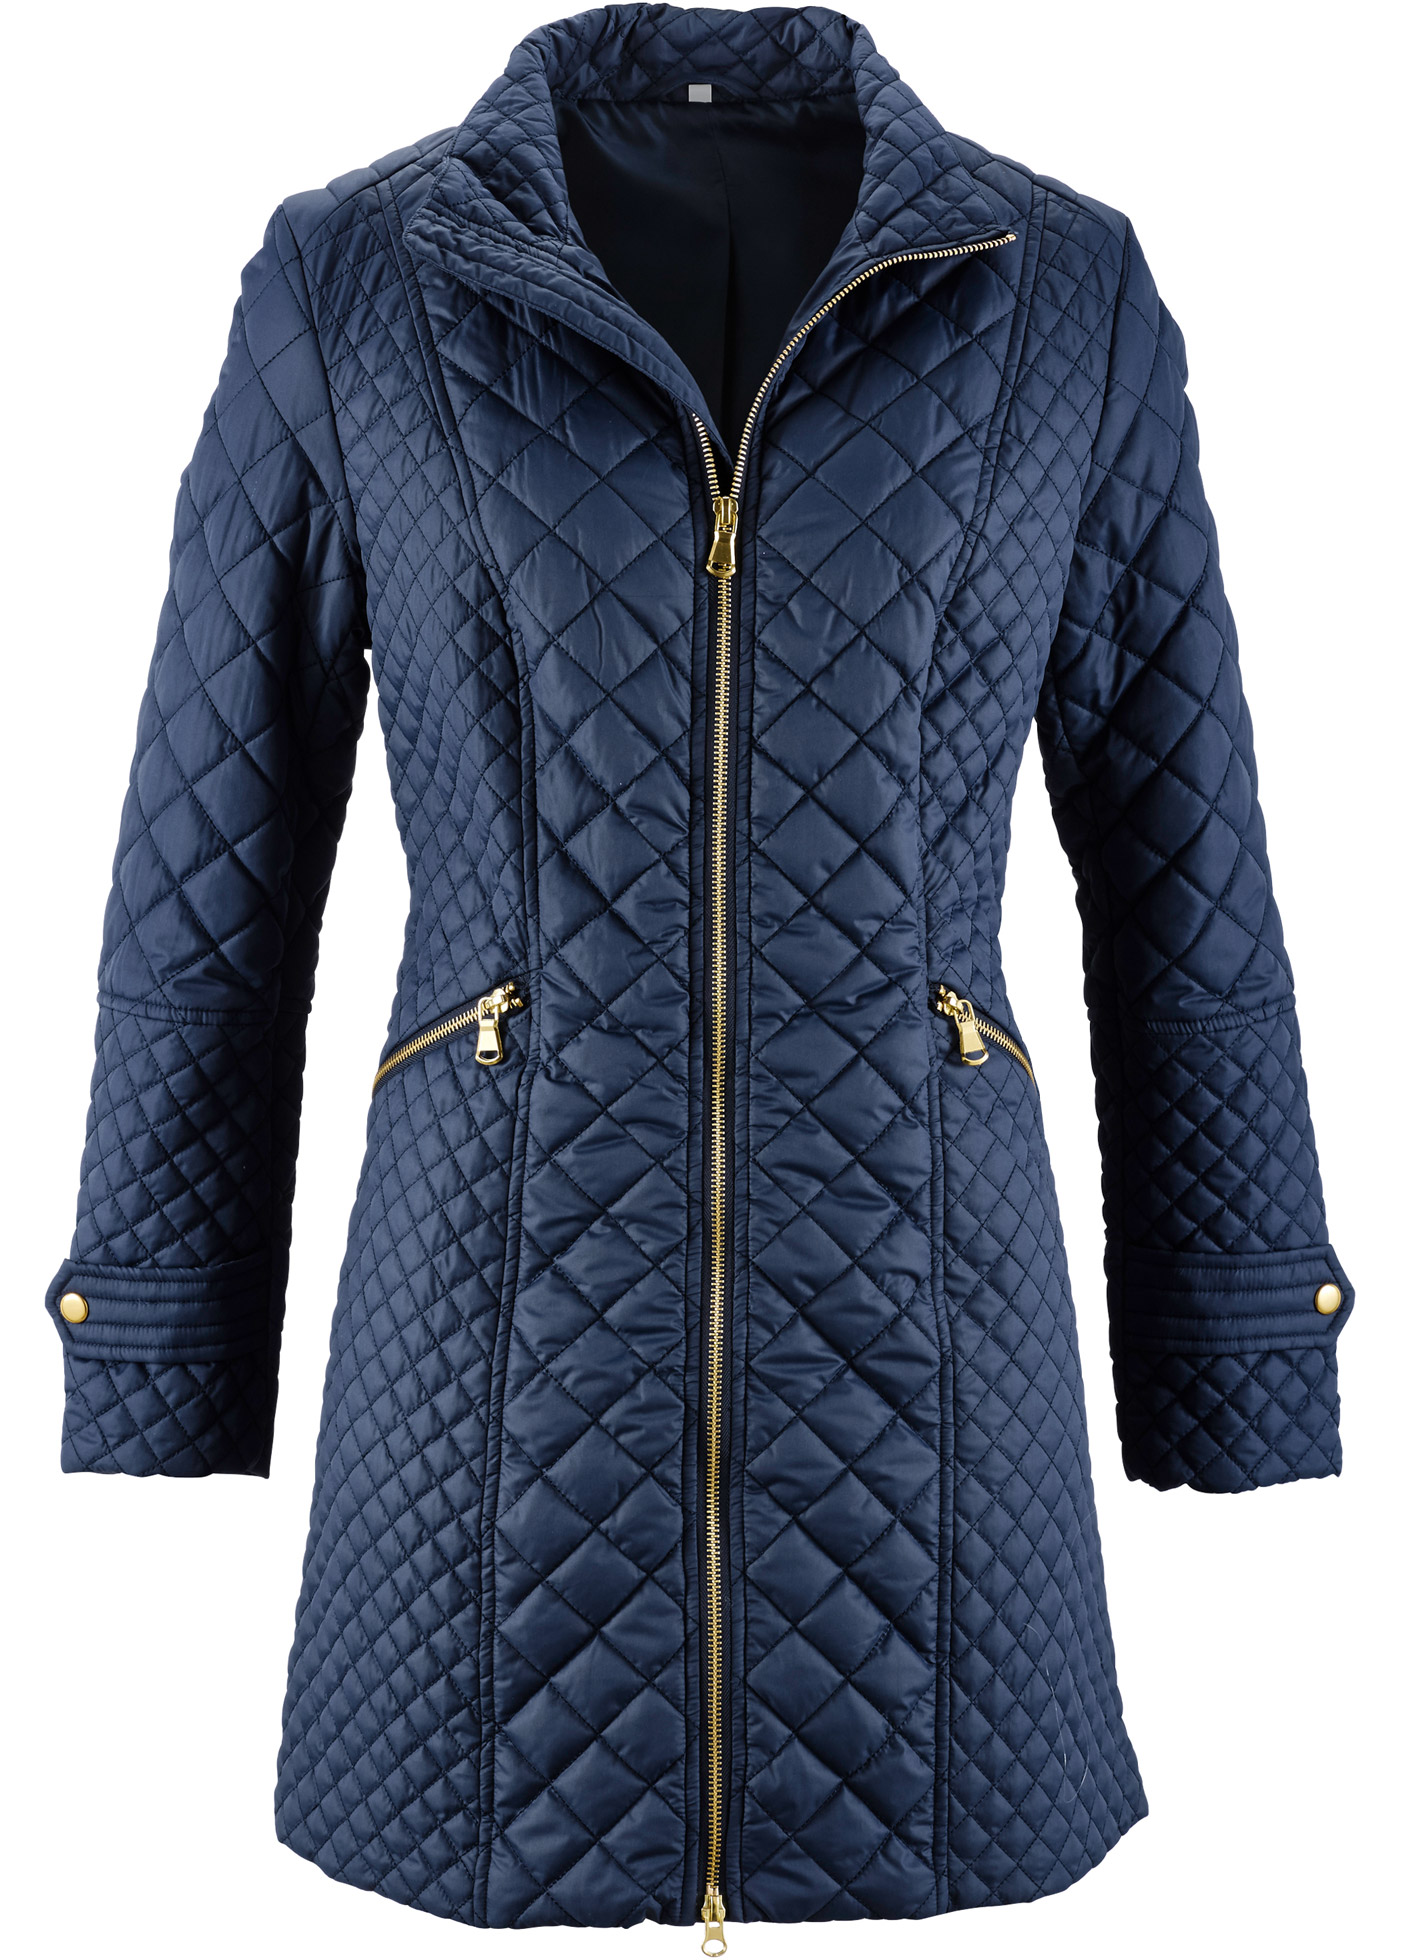 Синяя стеганая куртка. Стеганая куртка bonprix 96740195. Бонприкс стеганая куртка женская. Пальто стеганное Бонприх. Женское пальто bpc selection.